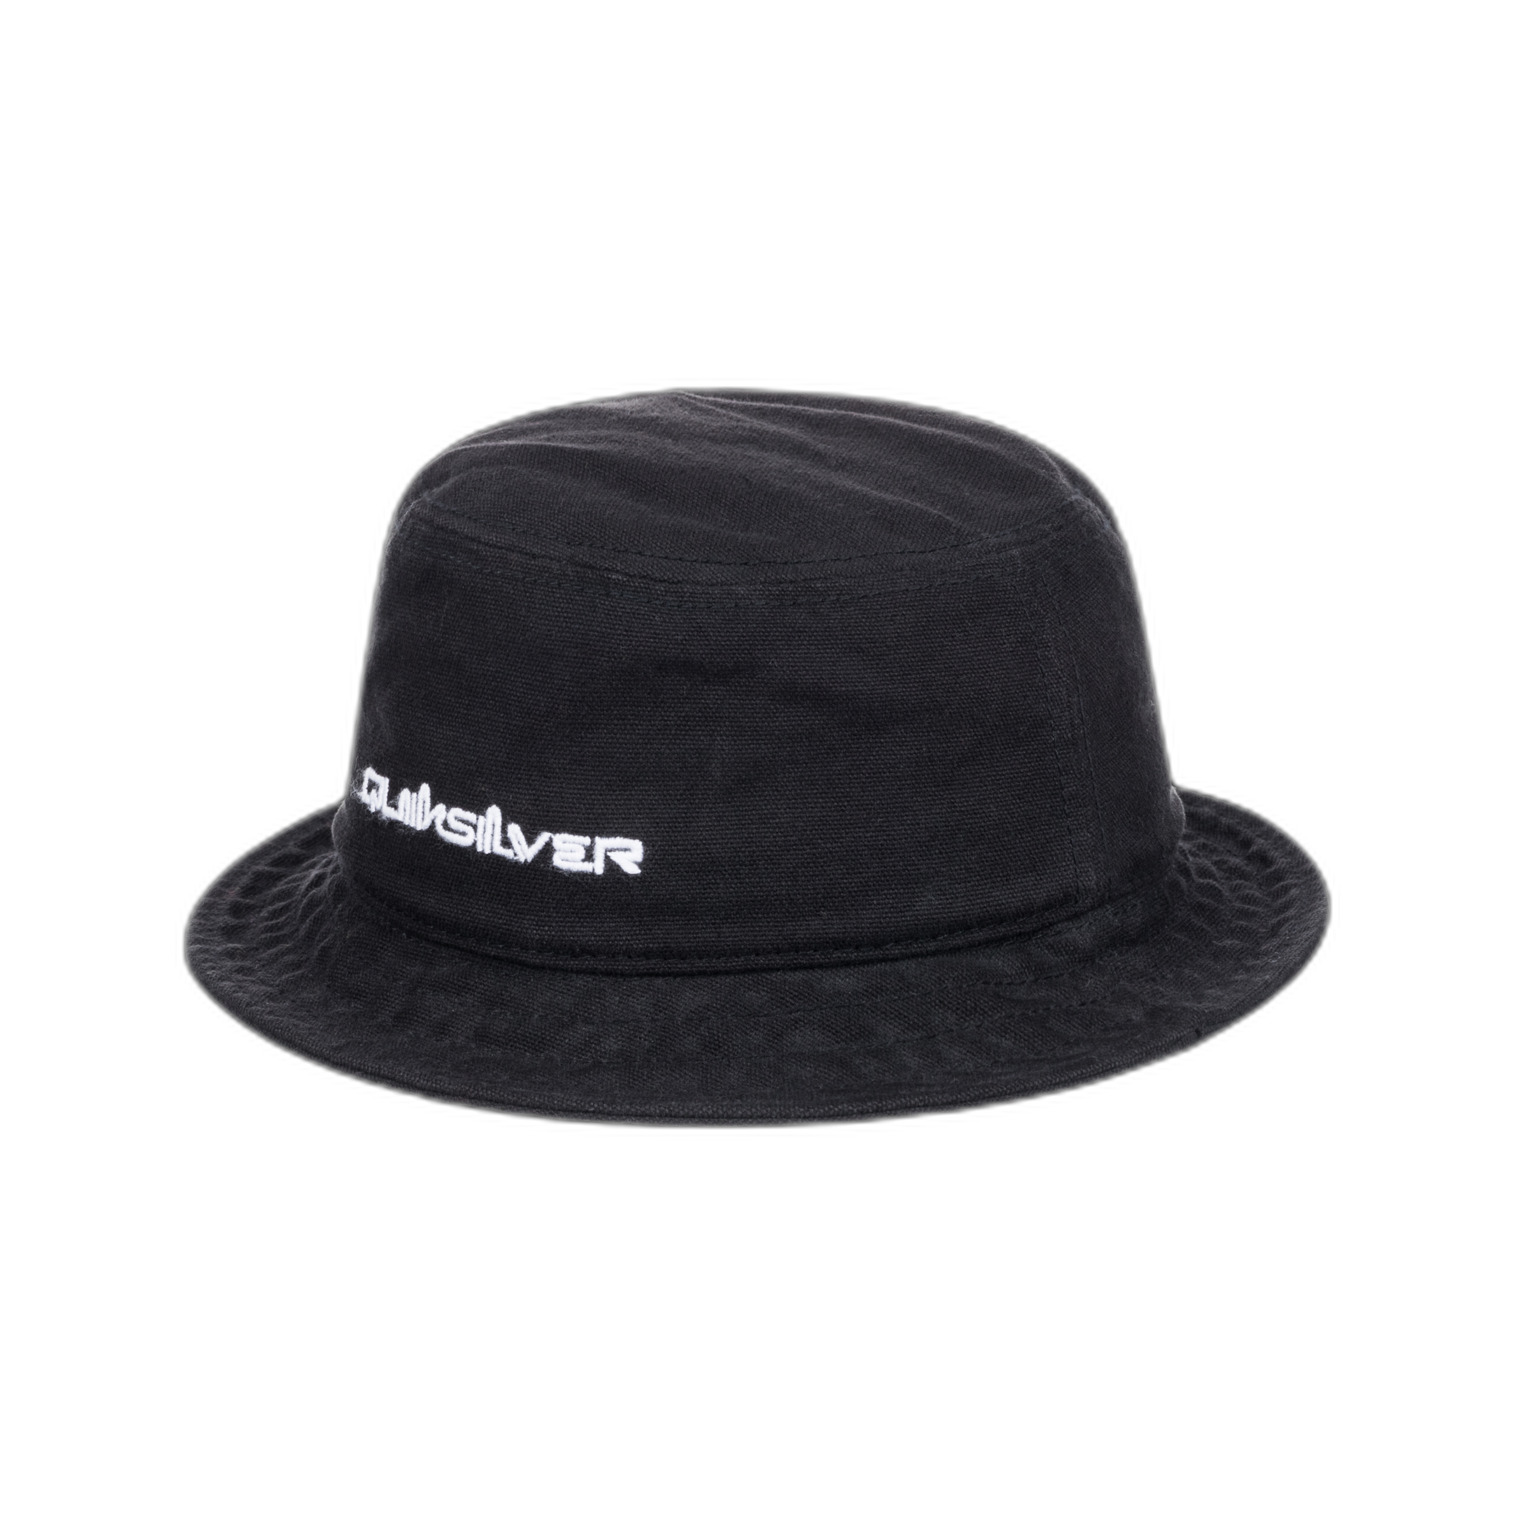 Quiksilver Classic Bucket - Bucket Hat for Women - Black - 